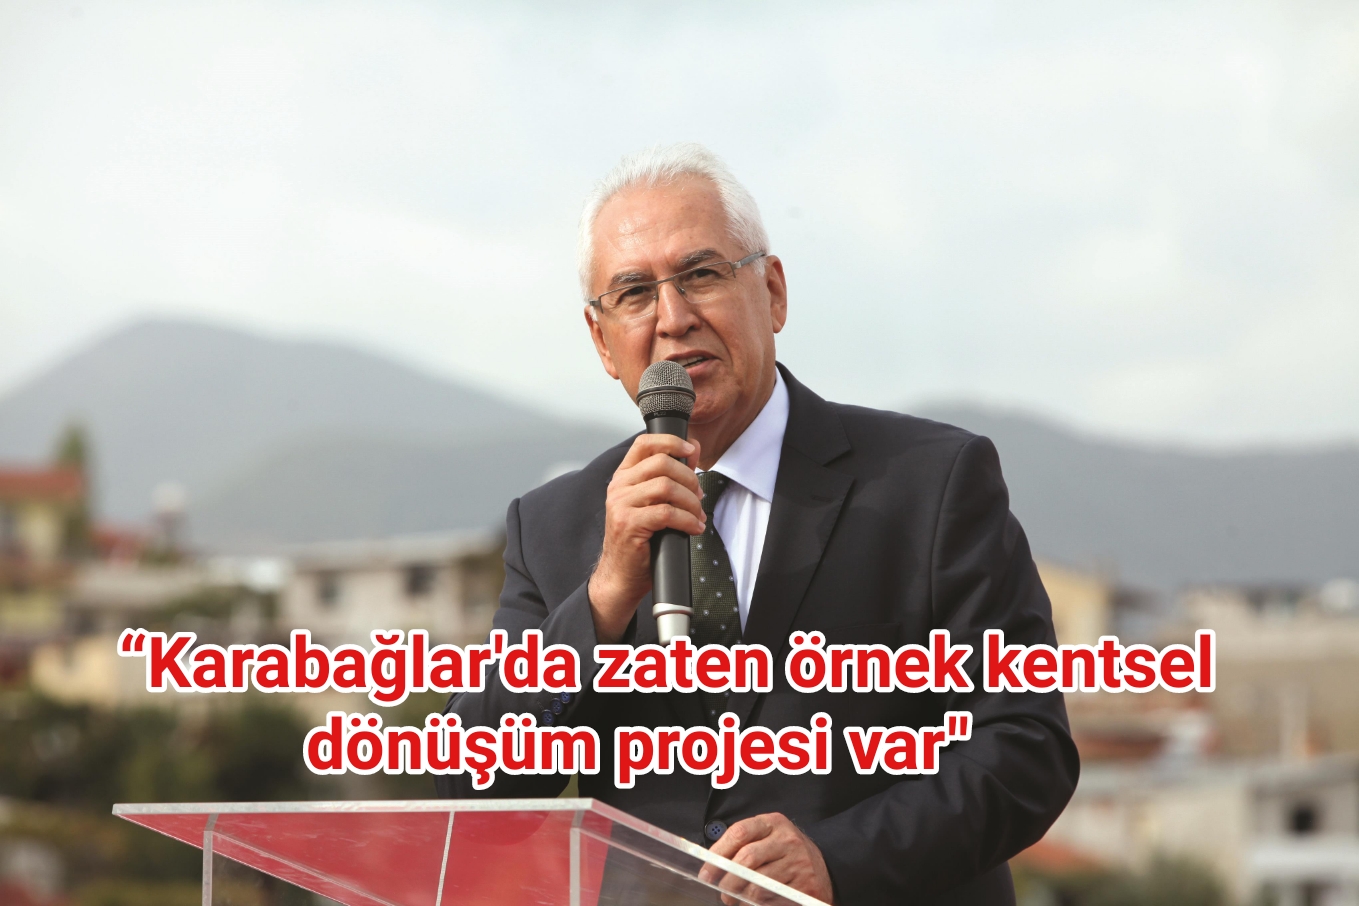 “Karabağlar’da zaten Türkiye’ye örnek olacak bir kentsel dönüşüm projesi var”